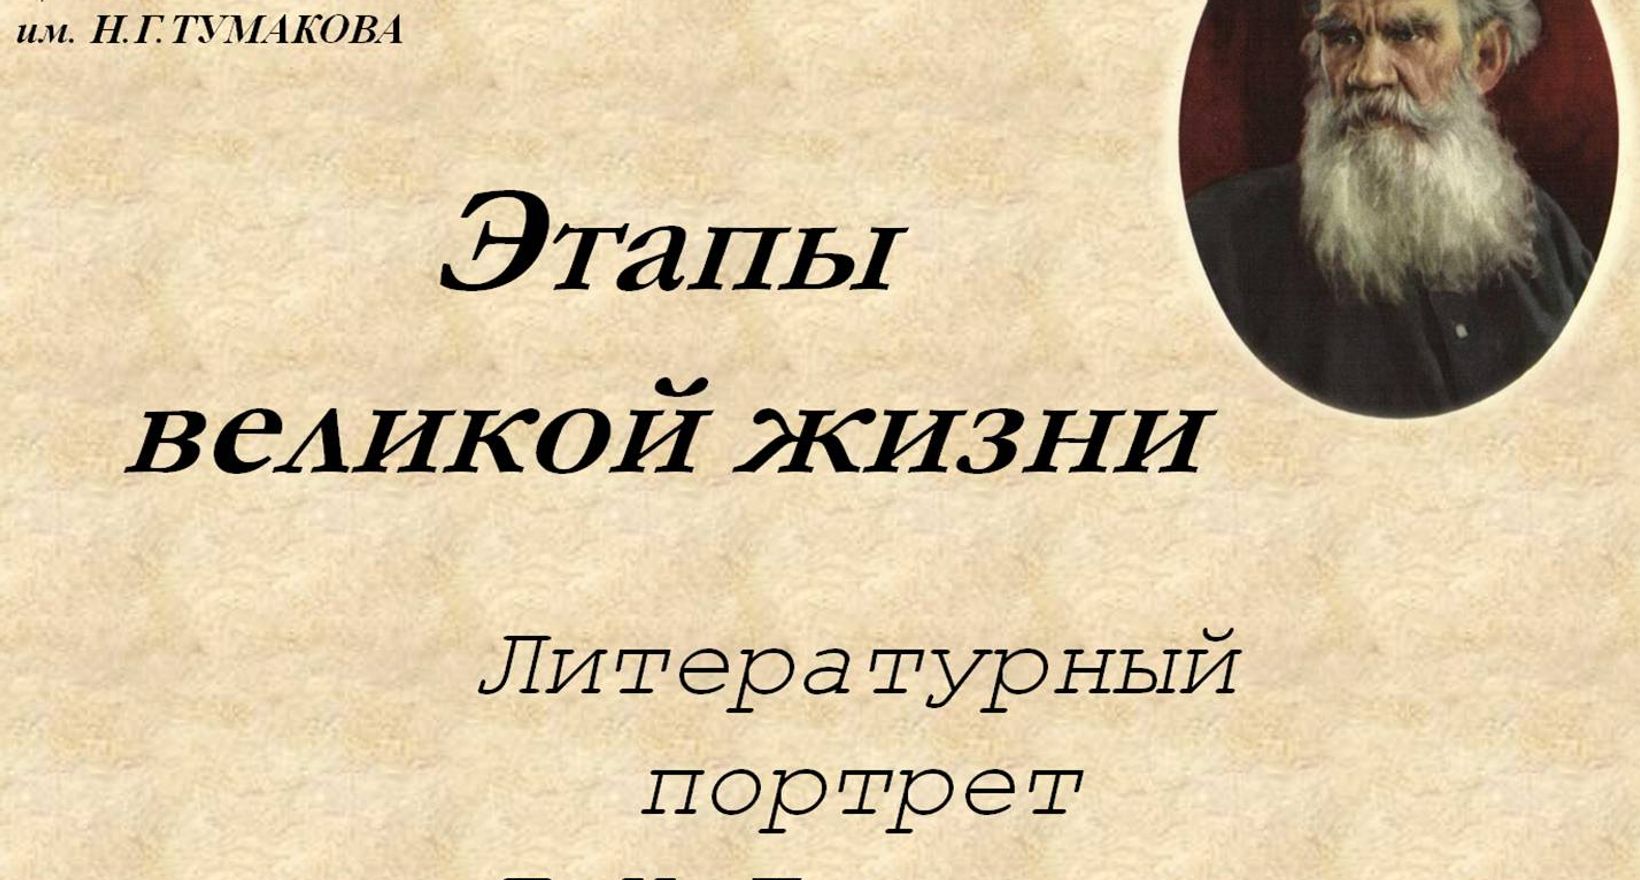 Этапы великой жизни: Л.Н.Толстой